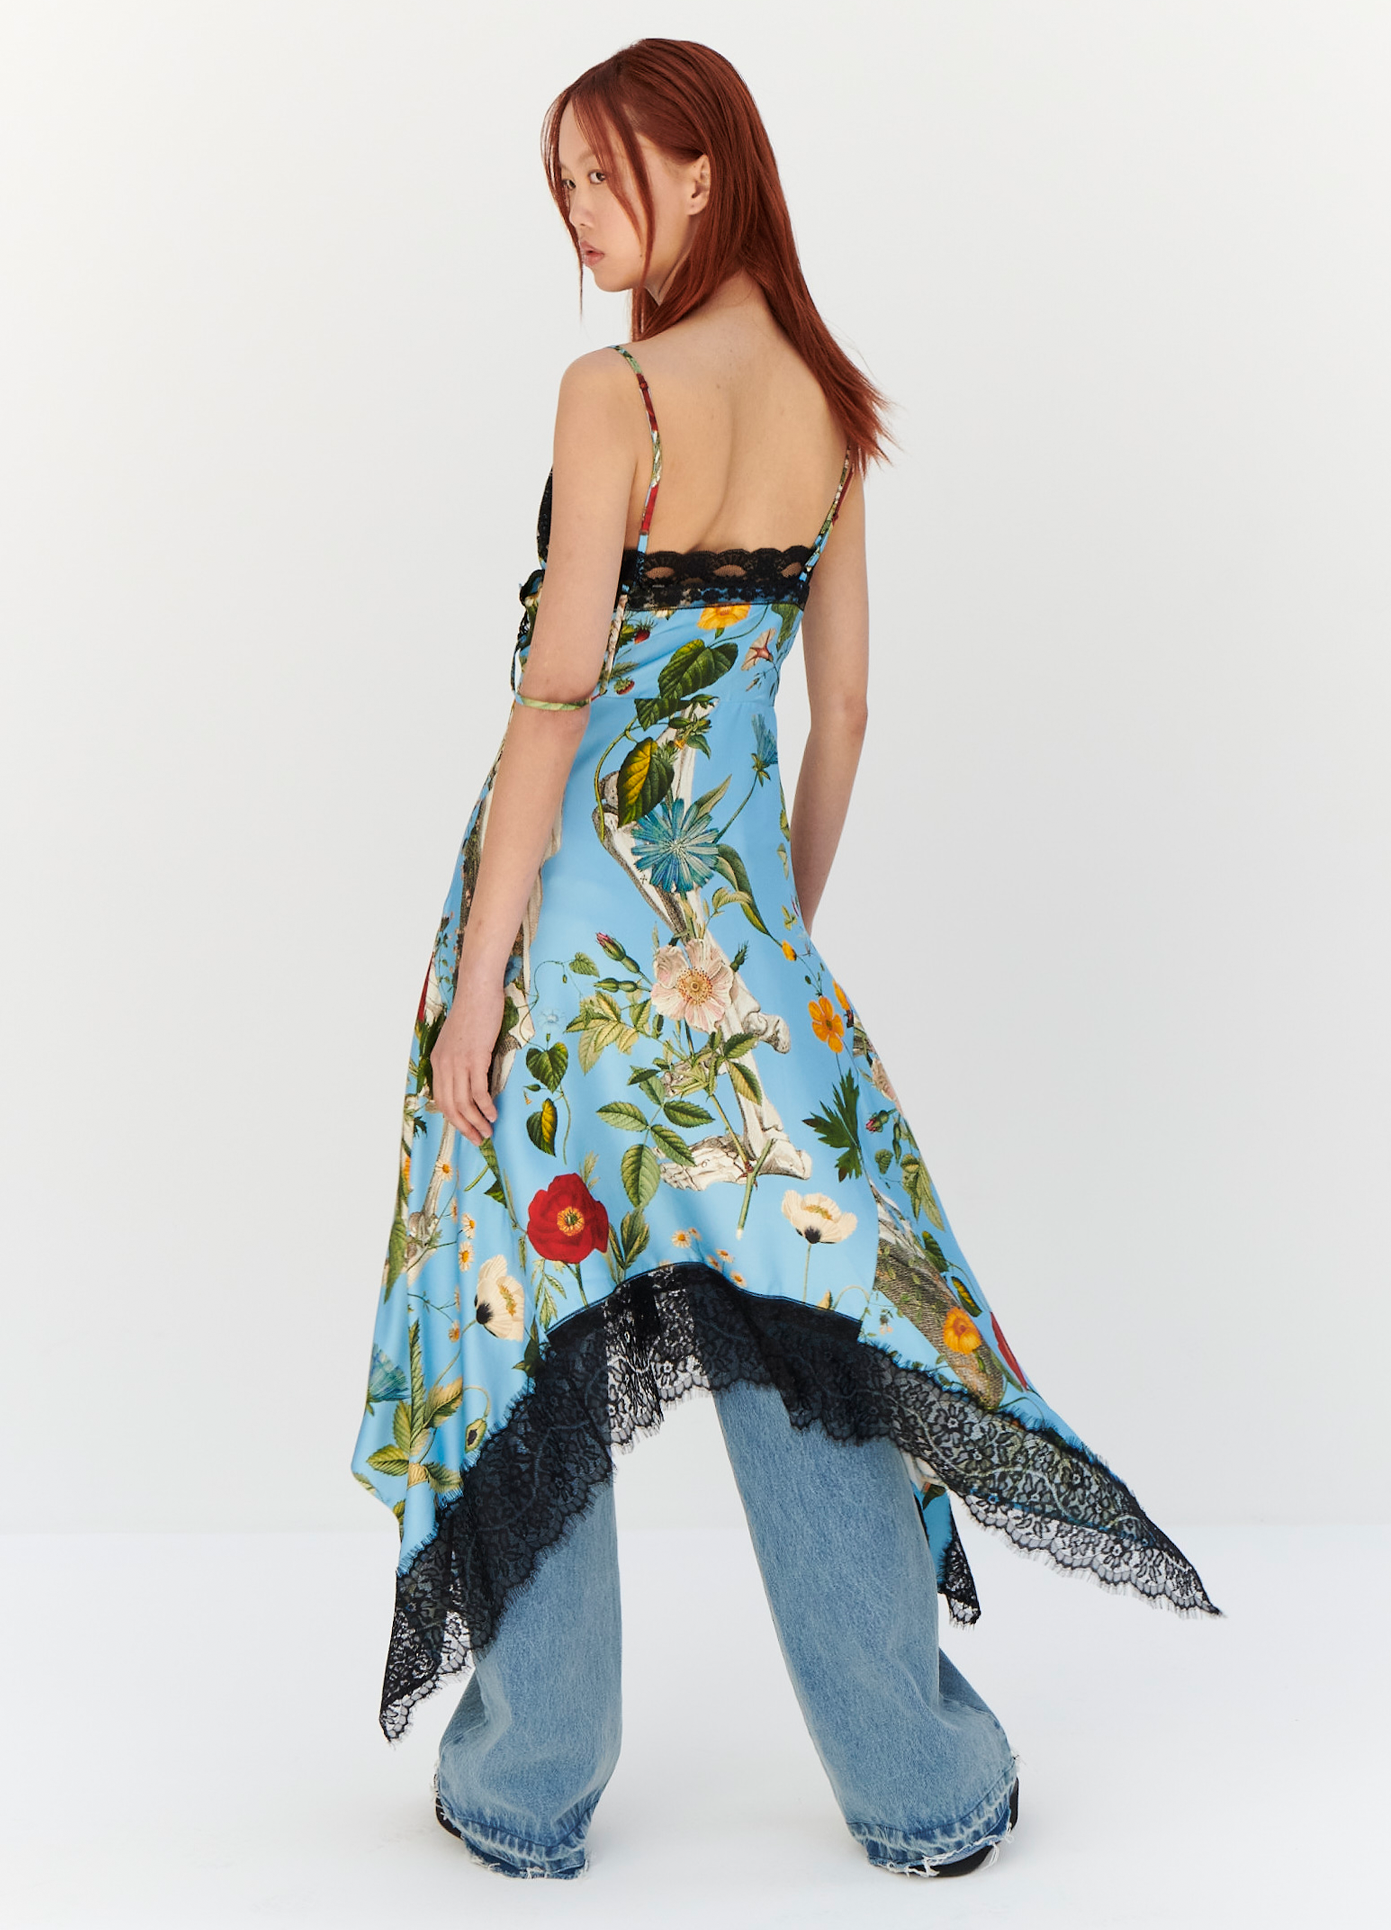 MONSE Floral Skeleton Print Slip Dress in Blue Multi on model looking left full back view